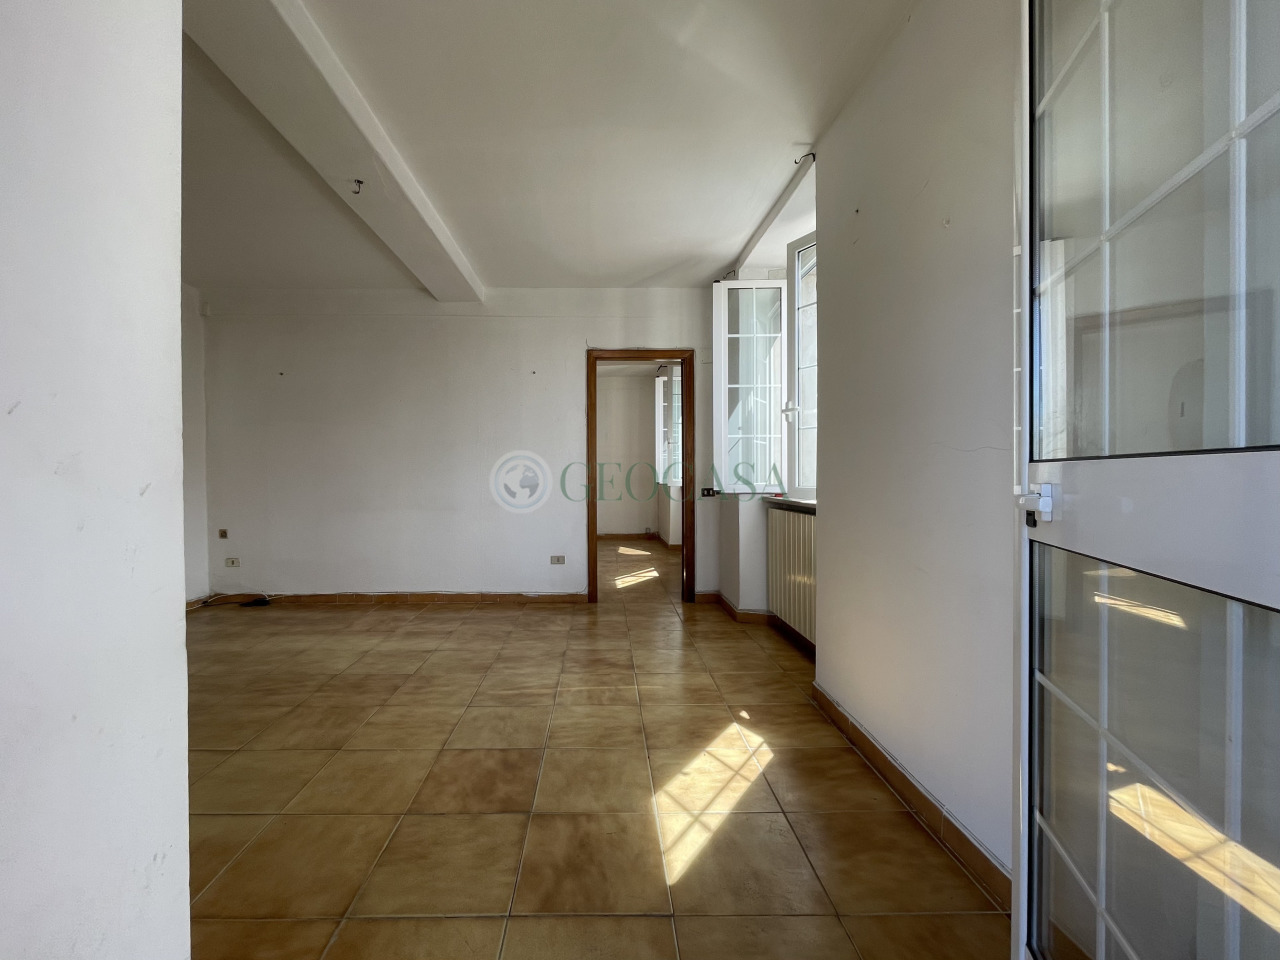 Appartamento in vendita a Sarzana, 4 locali, prezzo € 150.000 | PortaleAgenzieImmobiliari.it